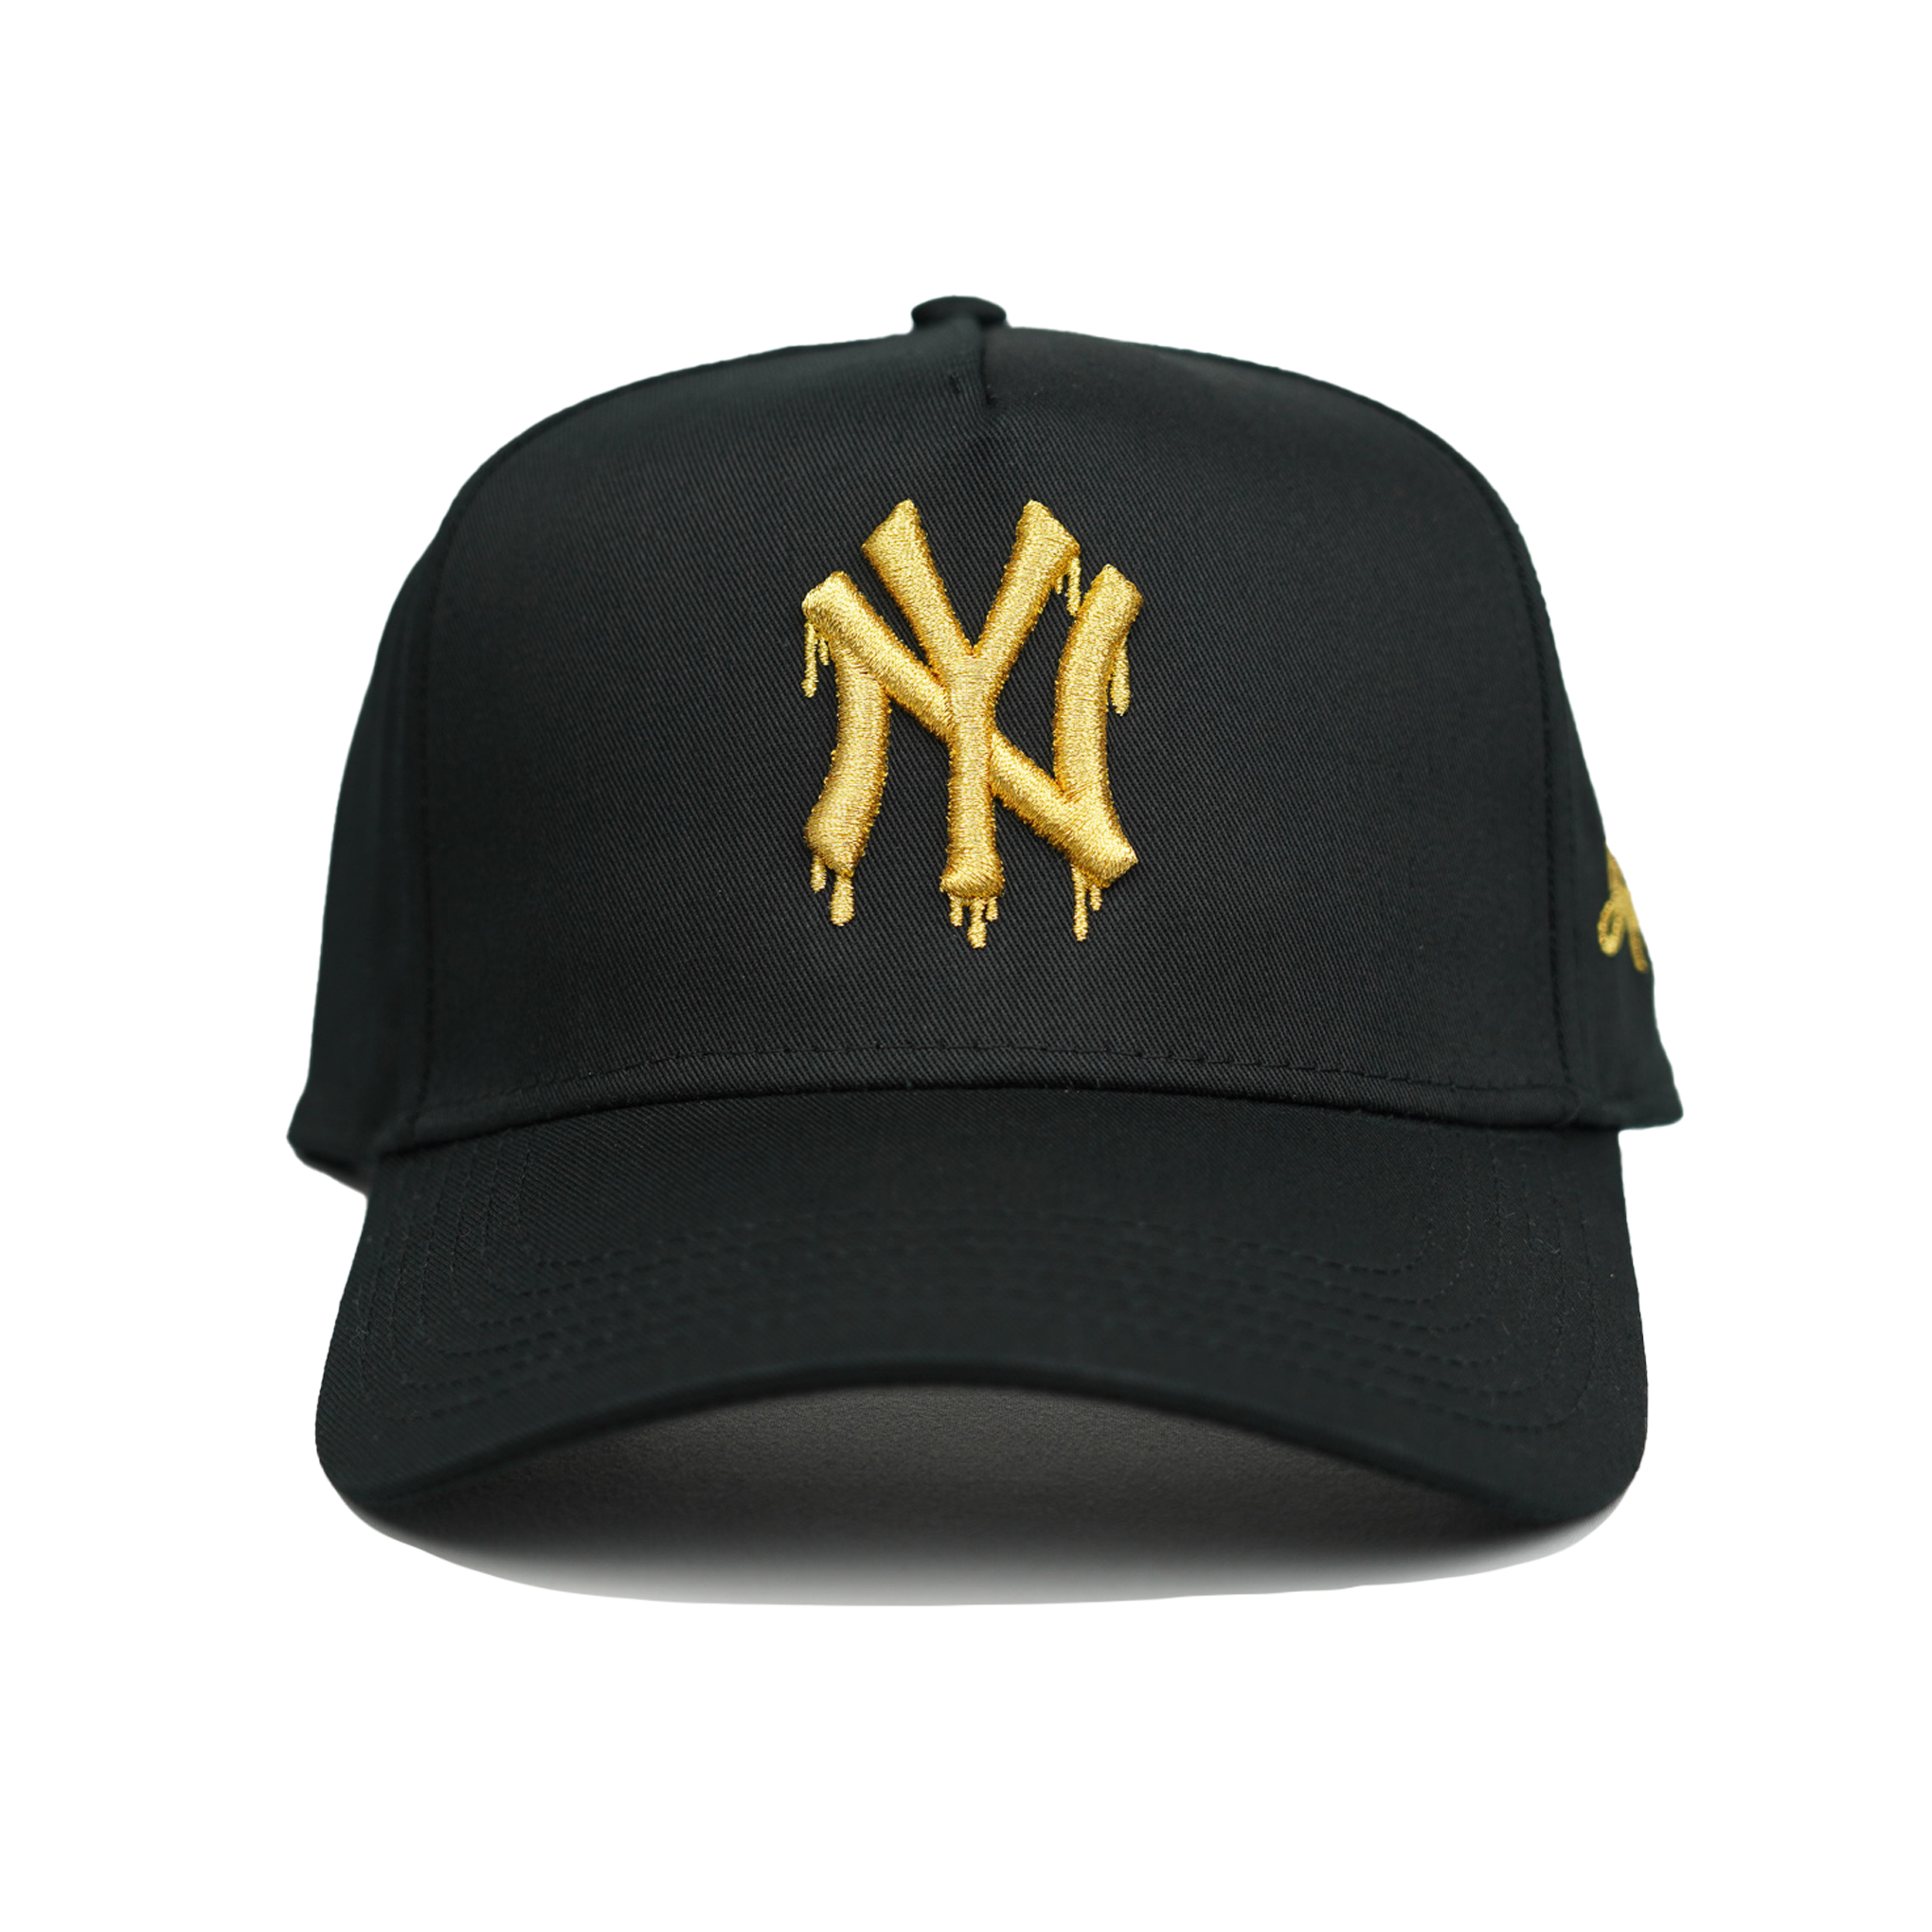 NY Gold Dripping Snapback Hat (BLACK)